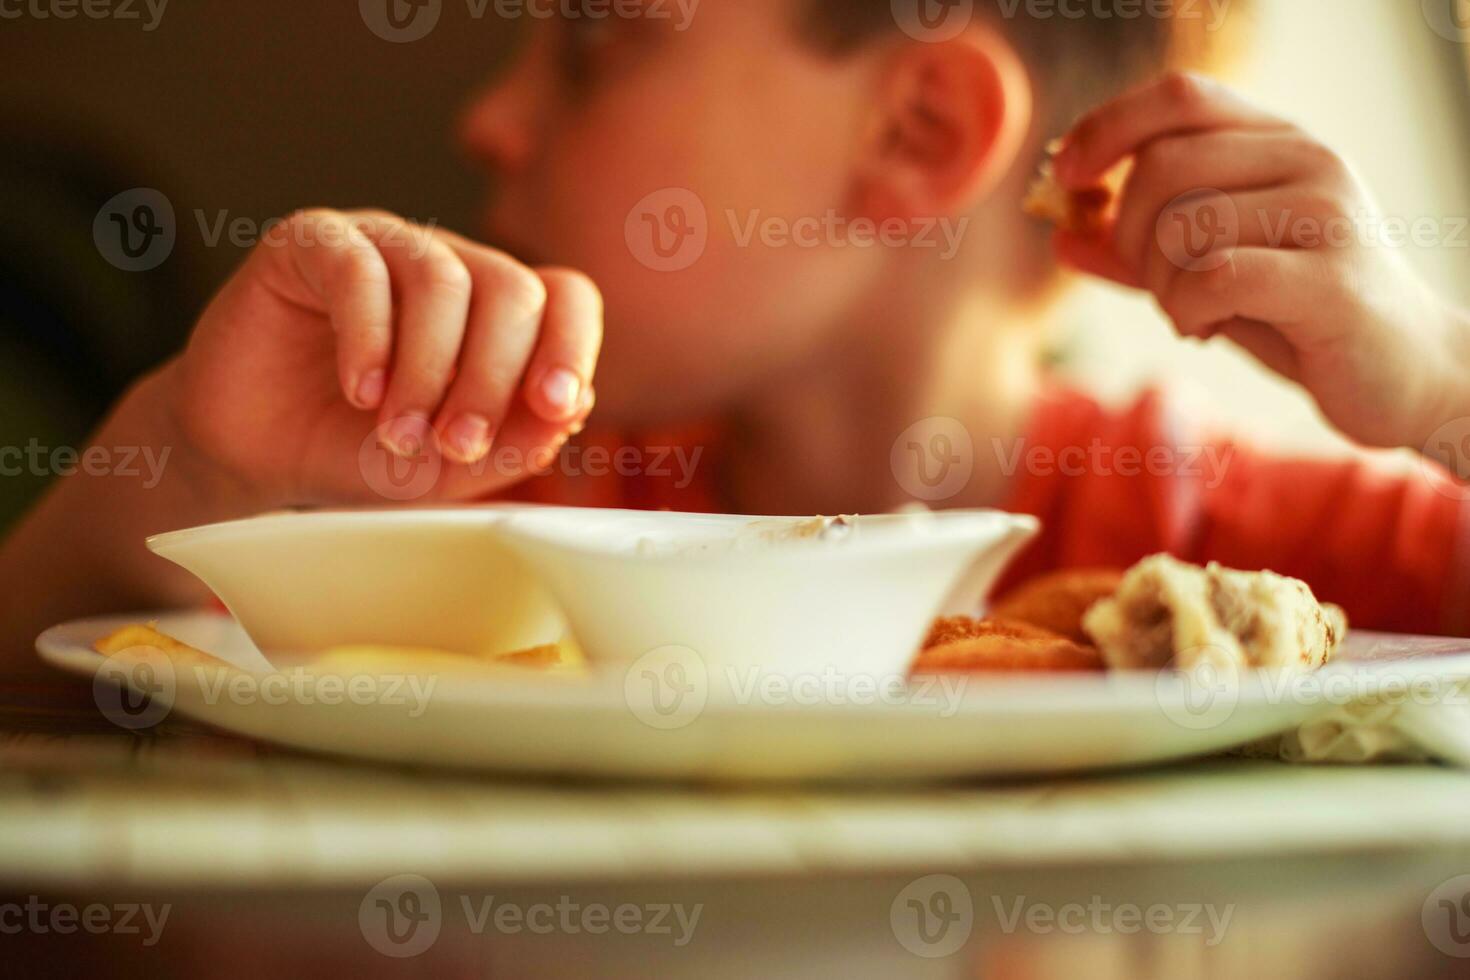 jongen aan het eten snel voedsel in een cafe. de kind aan het eten Frans Patat met klompjes foto